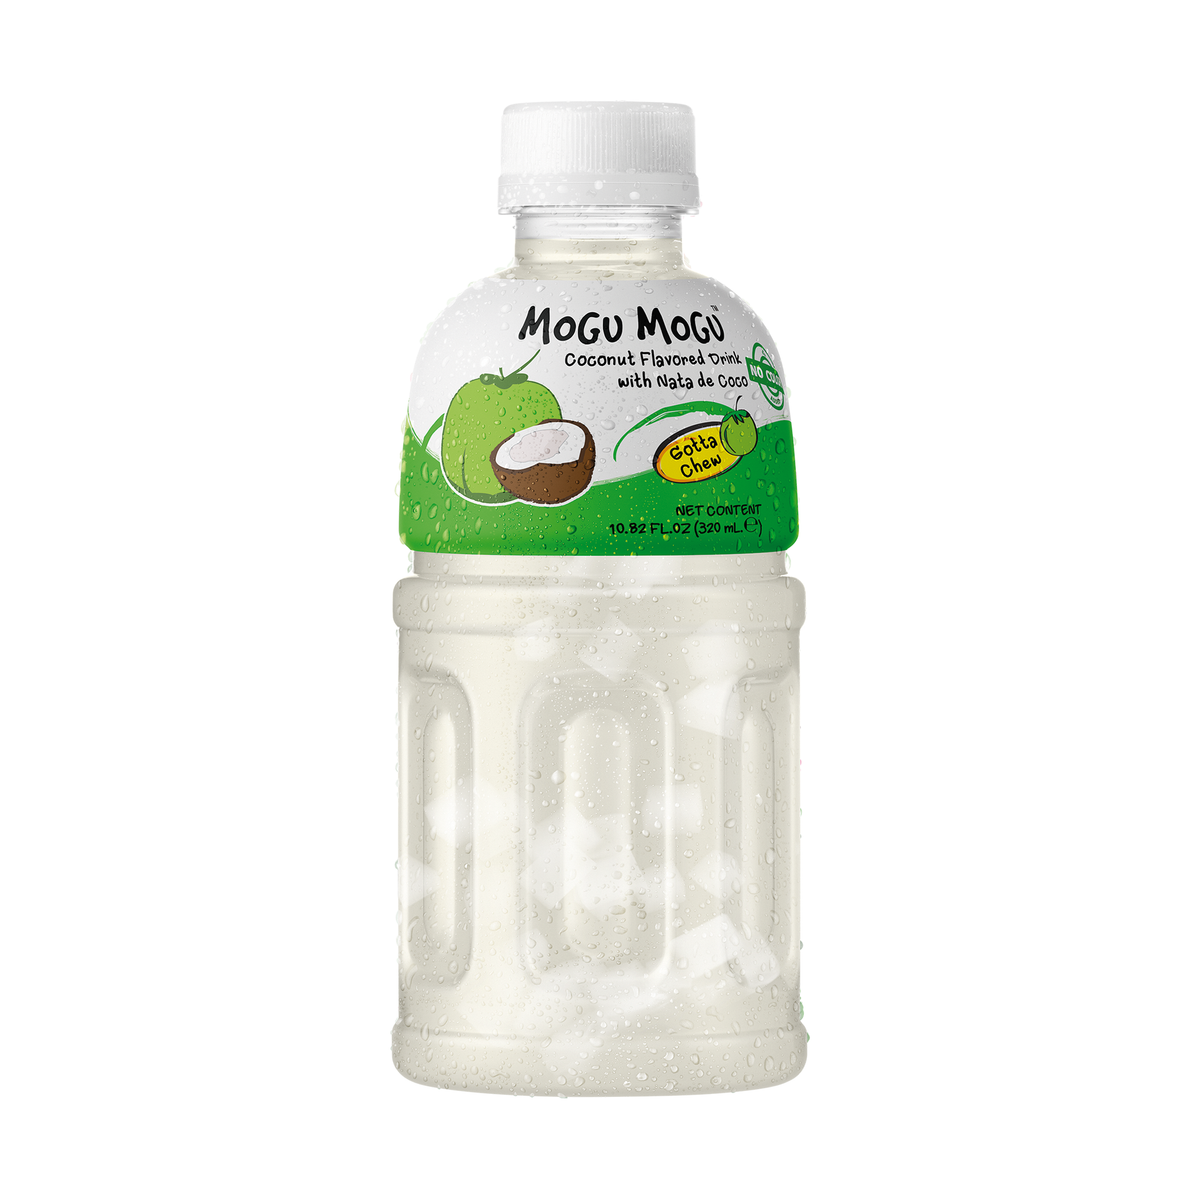 Mogu Mogu Coconut Drink – pinkiessweeties